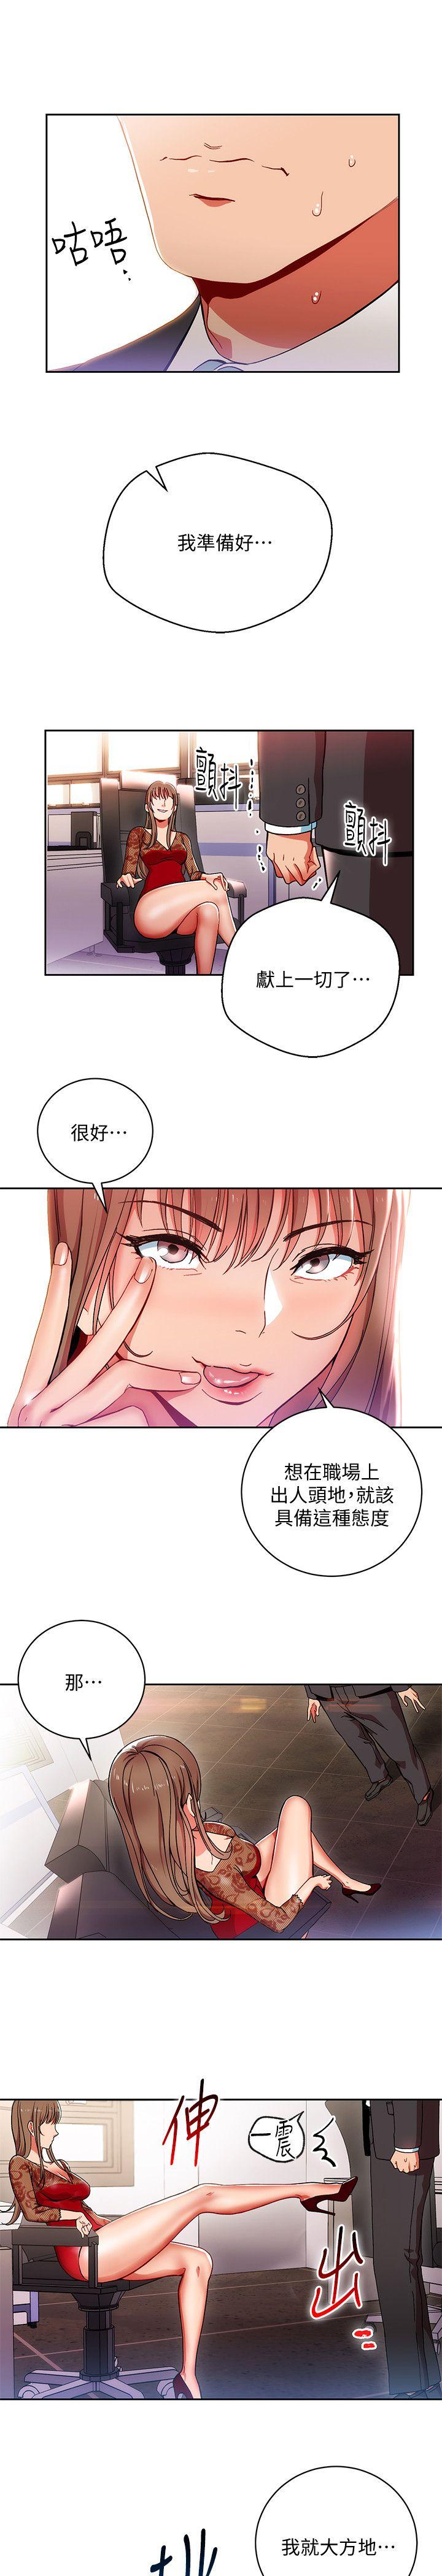 韩国污漫画 玩轉女上司 第1话-淫乱的新人训练 3